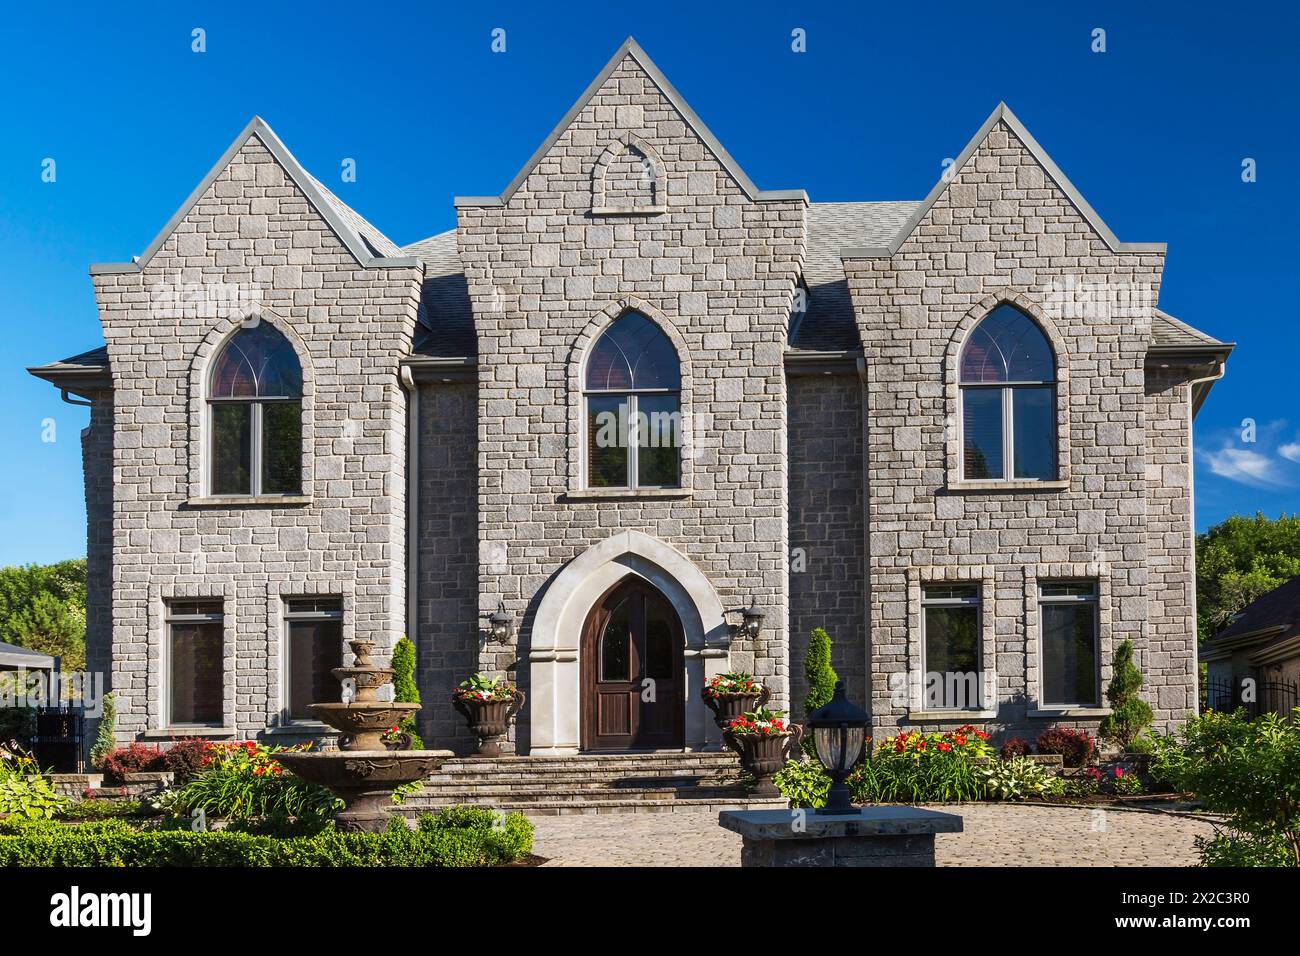 Façade de maison de style gothique en pierre taillée nuancée grise de deux étages avec cour avant paysagée en été. Banque D'Images